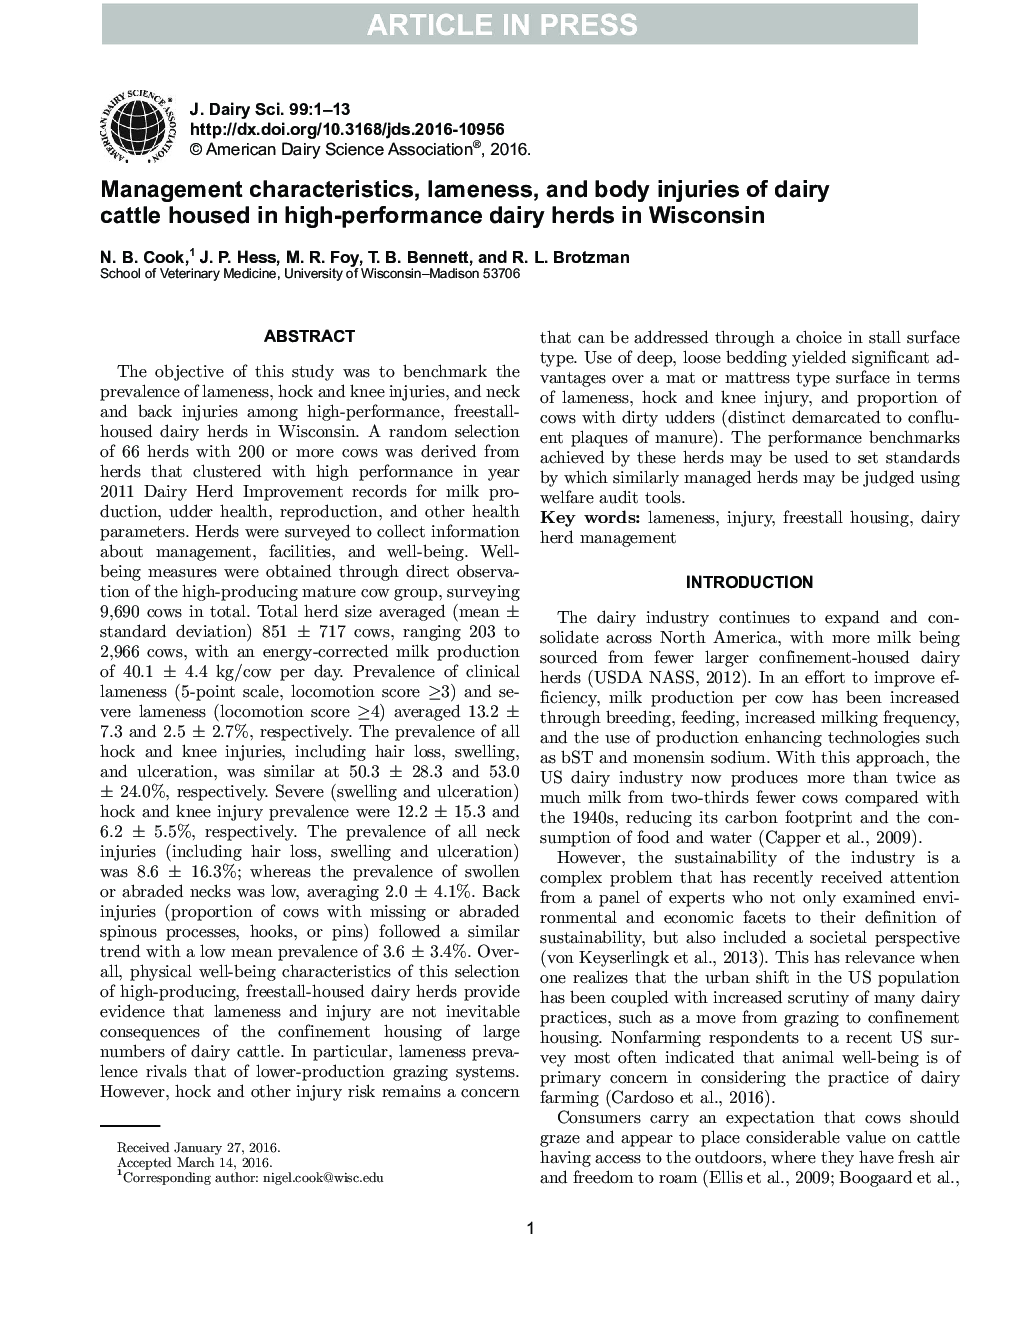 ویژگی های مدیریتی، لنگش و آسیب های بدن گاوهای شیری در گله های شیری با عملکرد بالا در ویسکانسین 